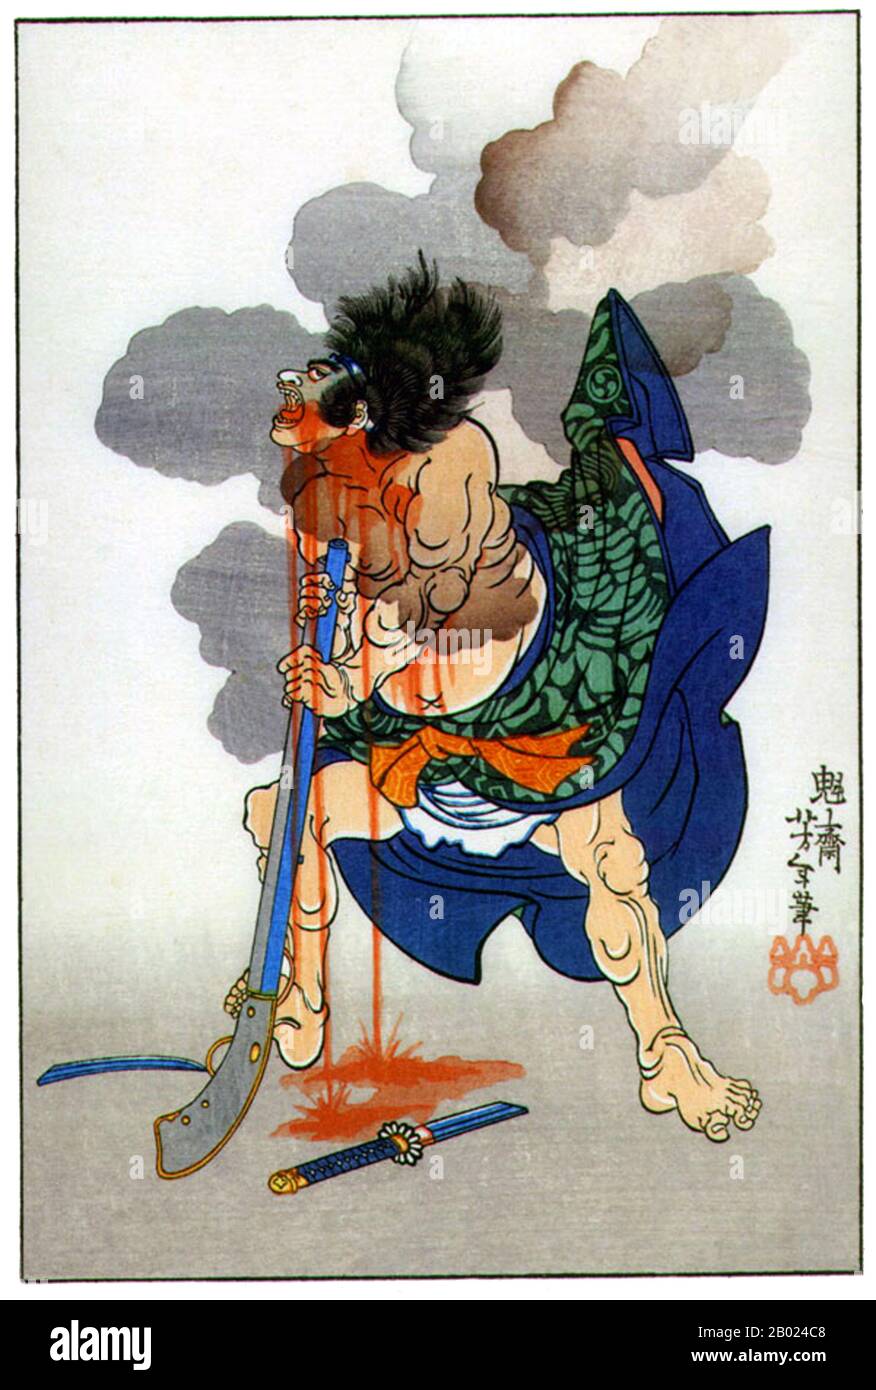 Tsukioka Yoshitoshi (30 avril 1839 – 9 juin 1892) (japonais : 月岡 芳年; également nommé Tiso Yoshitoshi 大蘇 芳年) était un artiste japonais et un maître d'impression de boisés Ukiyo-e. Il est largement reconnu comme le dernier grand maître d'Ukiyo-e, un type d'impression japonaise de blocs de bois. Il est en outre considéré comme l'un des plus grands innovateurs de la forme. Sa carrière a duré deux périodes – les dernières années de la période Edo Japon, et les premières années du Japon moderne après la restauration Meiji. Comme beaucoup de Japonais, Yoshitoshi était intéressé par de nouvelles choses du reste du monde, mais avec le temps il est devenu de plus en plus concerne Banque D'Images